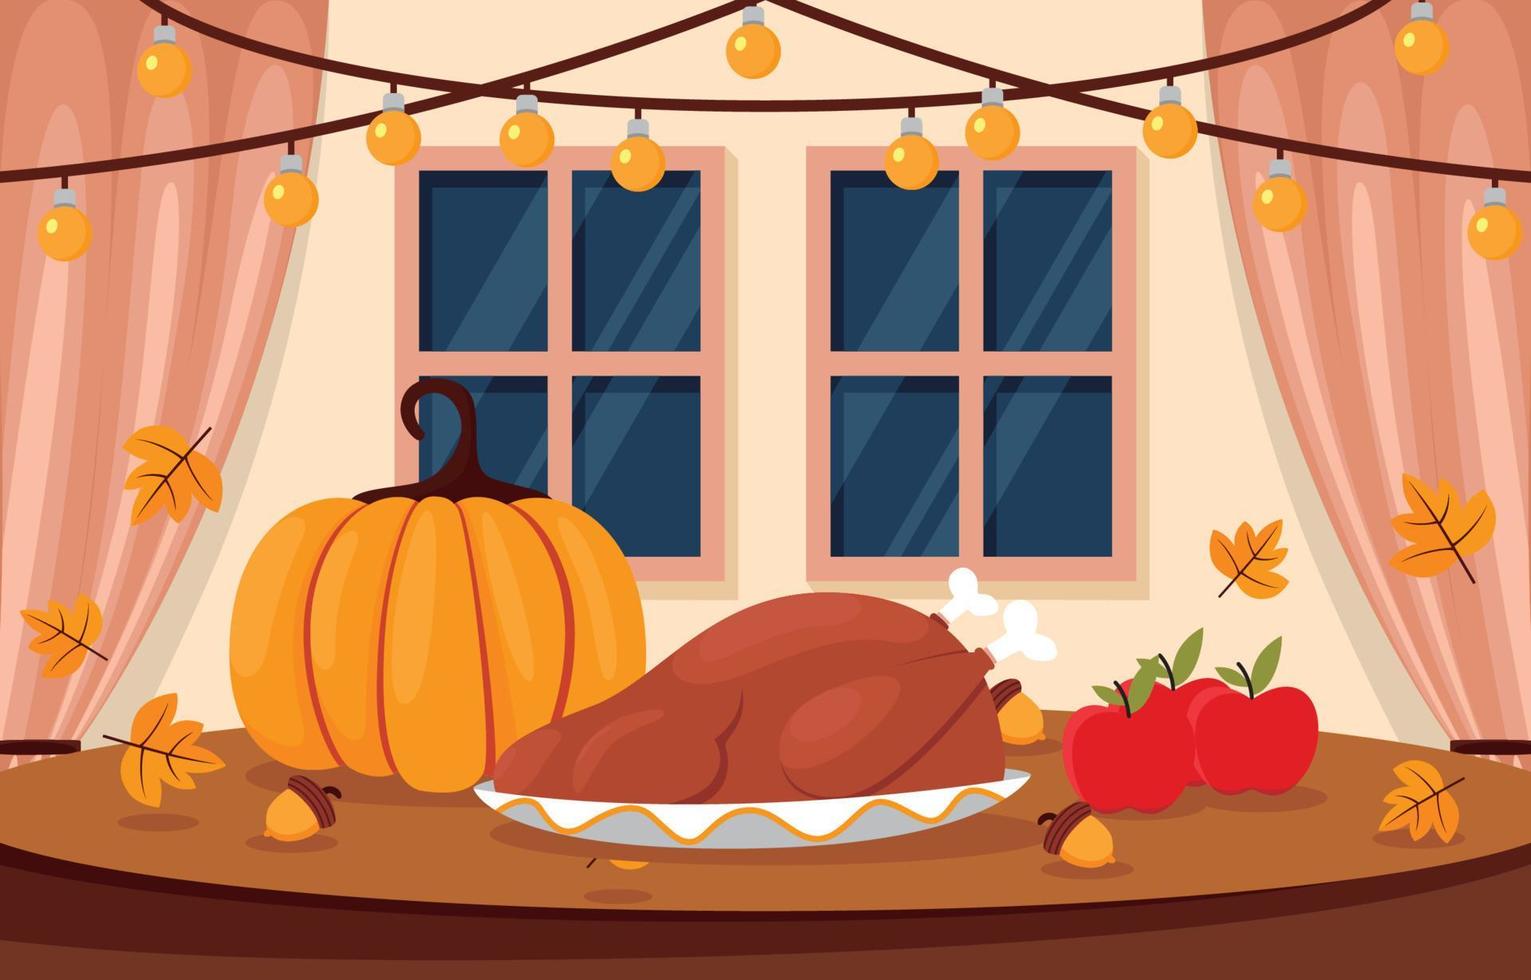 Thanksgiving diner achtergrond vector